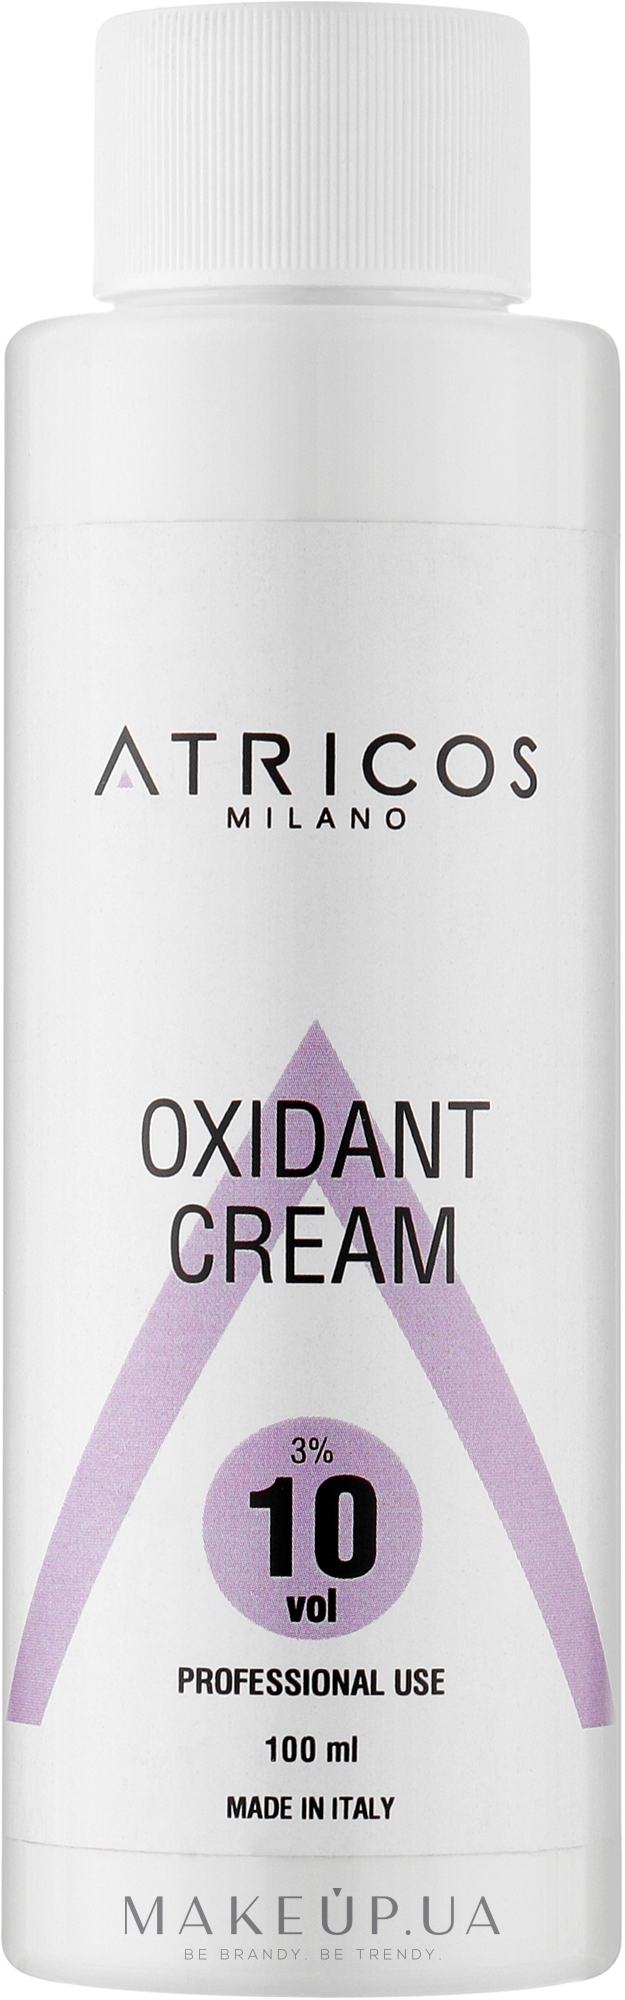 Оксидант-крем для окрашивания и осветления прядей - Atricos Oxidant Cream 10 Vol 3% — фото 100ml